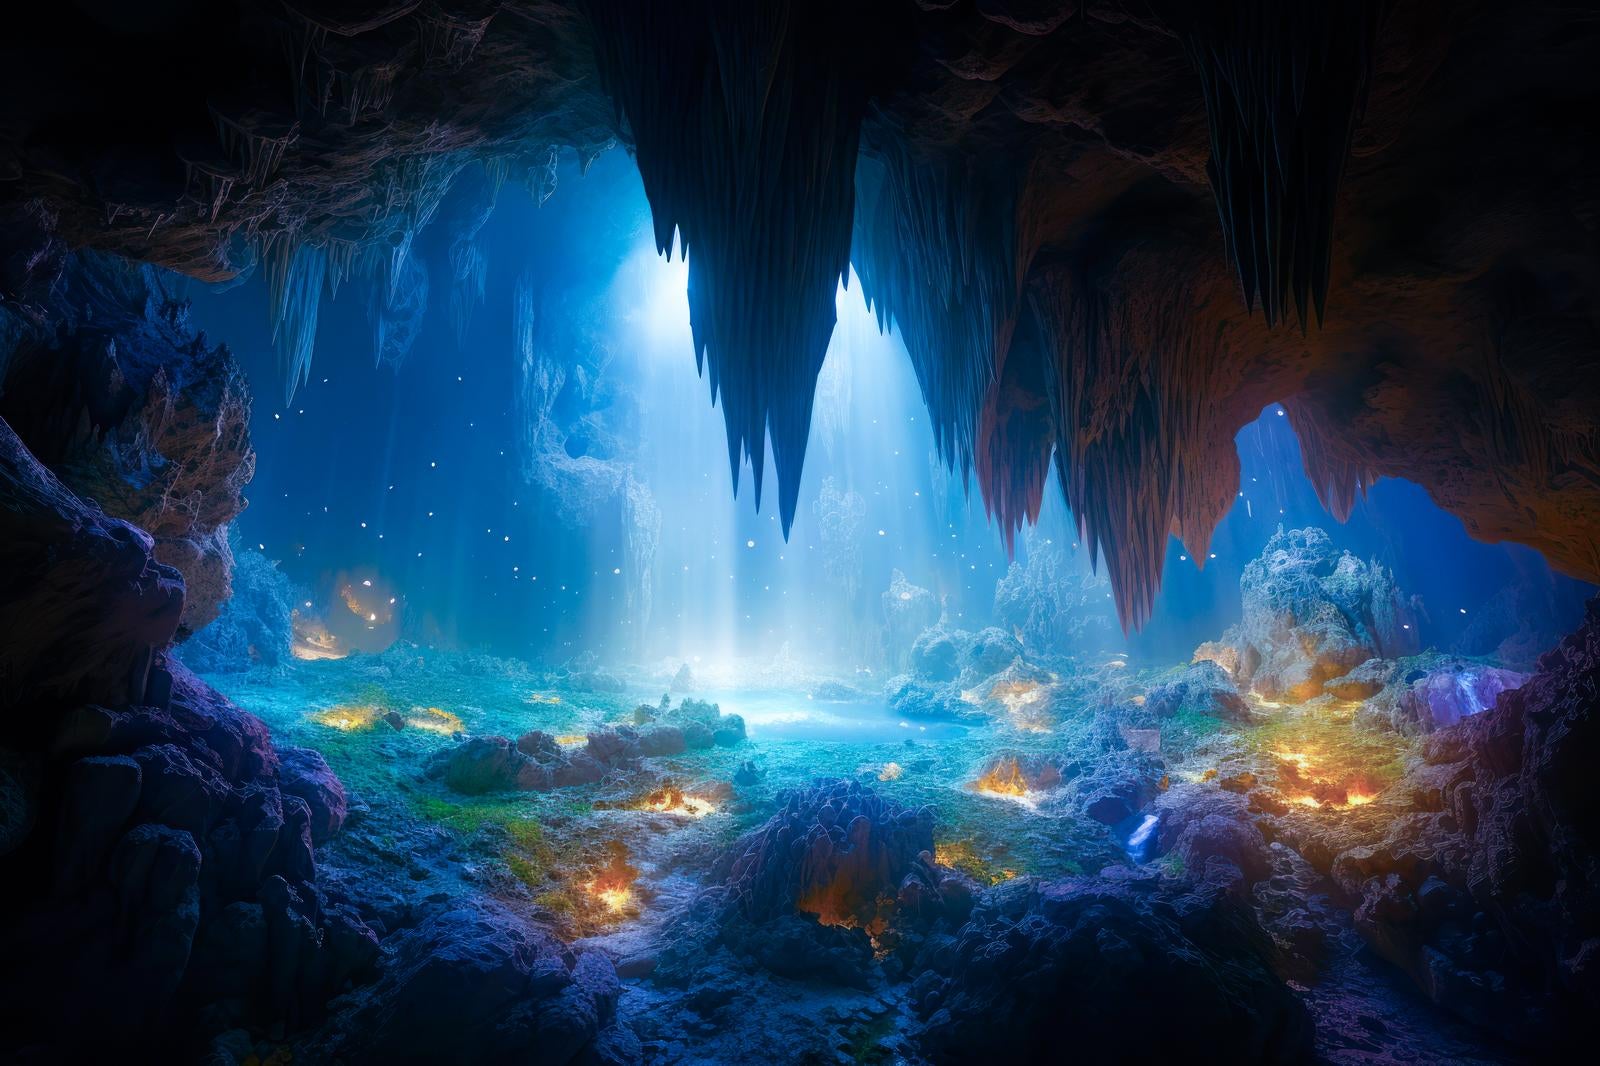 「鍾乳洞の中の水源」の写真